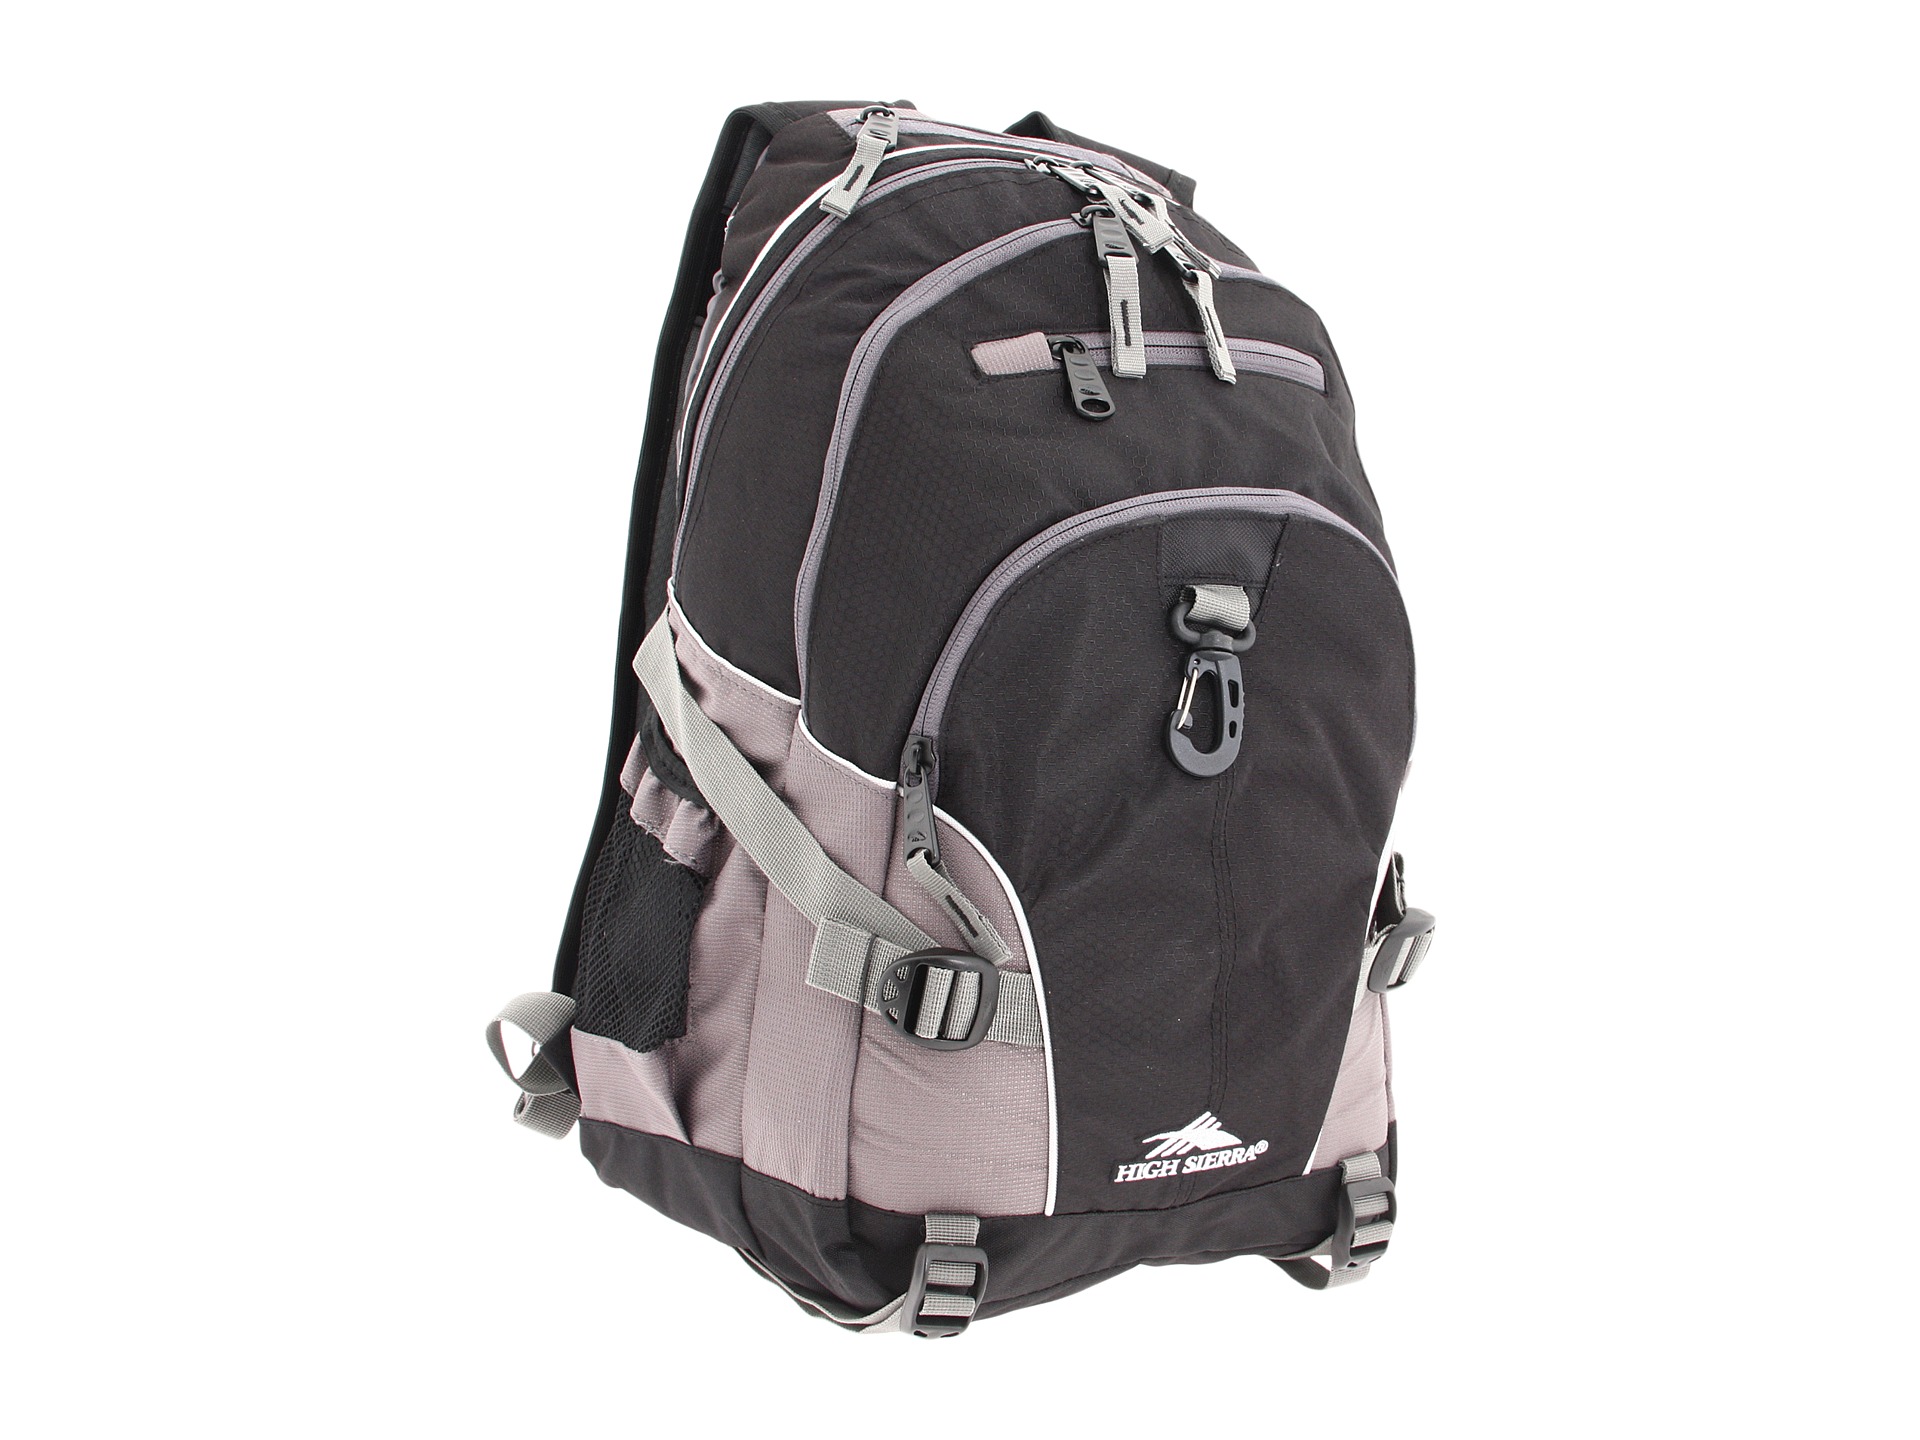 High Sierra Loop Backpack at Zappos.com